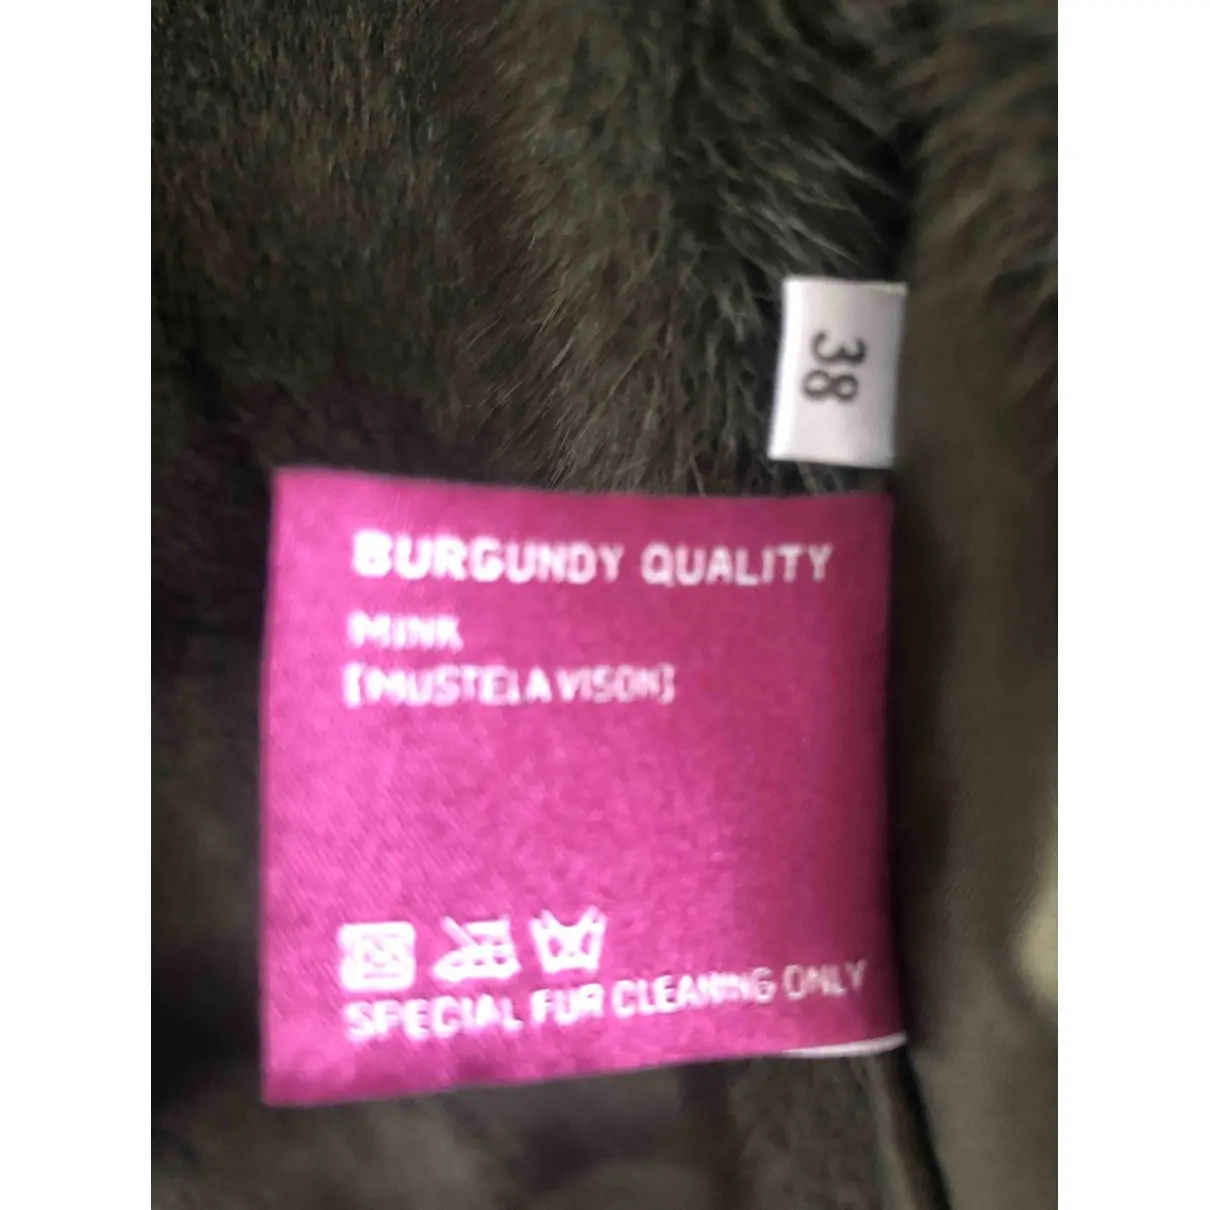 Buy Kopenhagen Fur Mink coat online